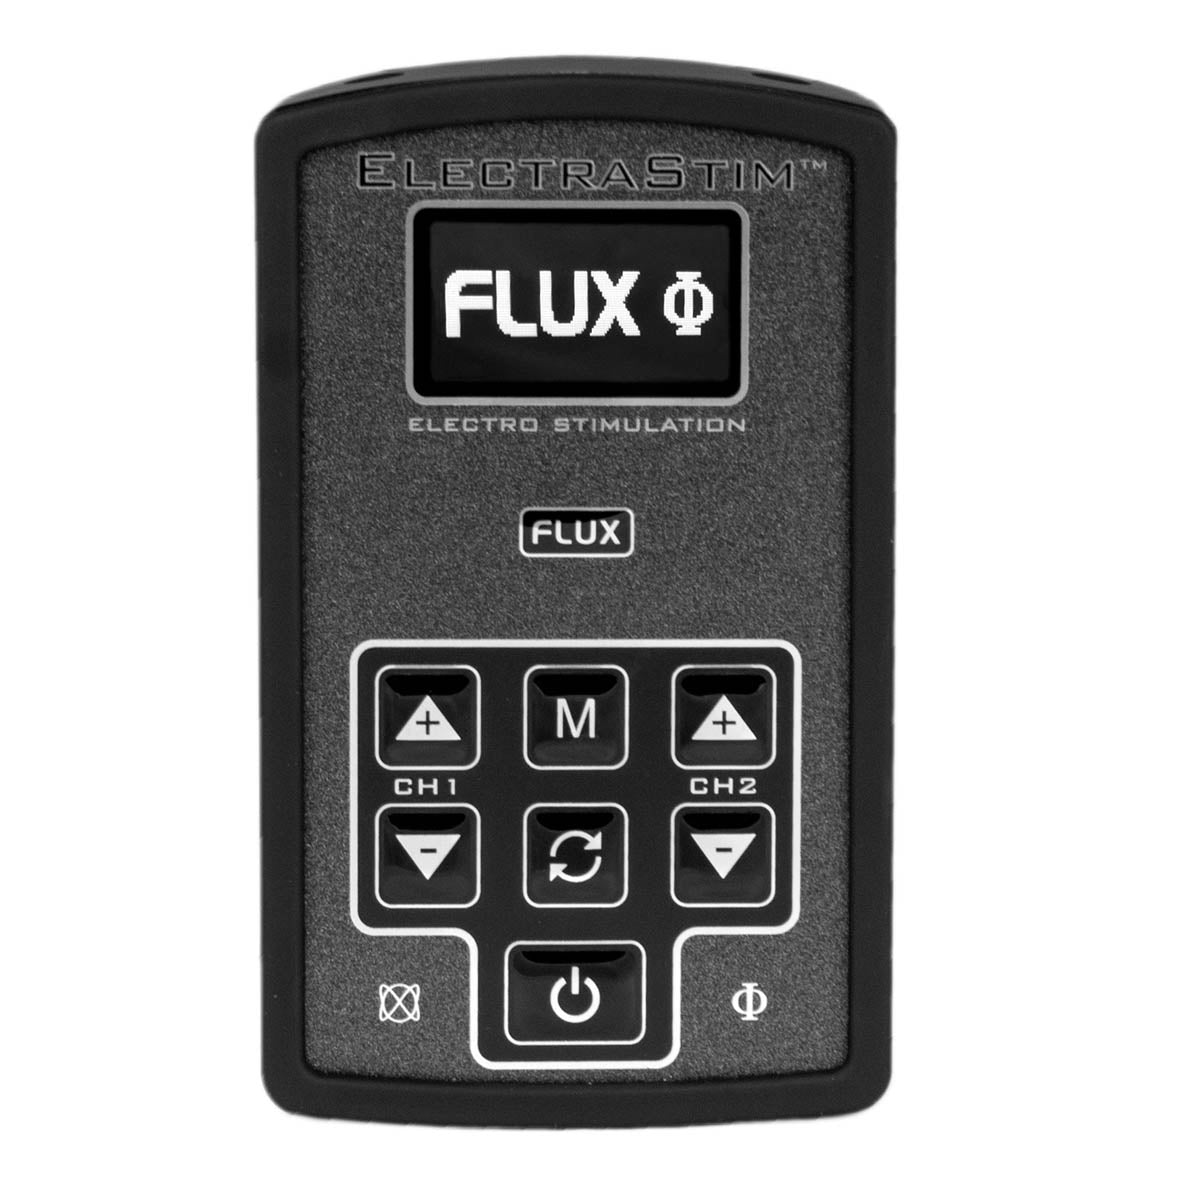 ElectraStim FLUX Dual Channel Electrosex Stimulator